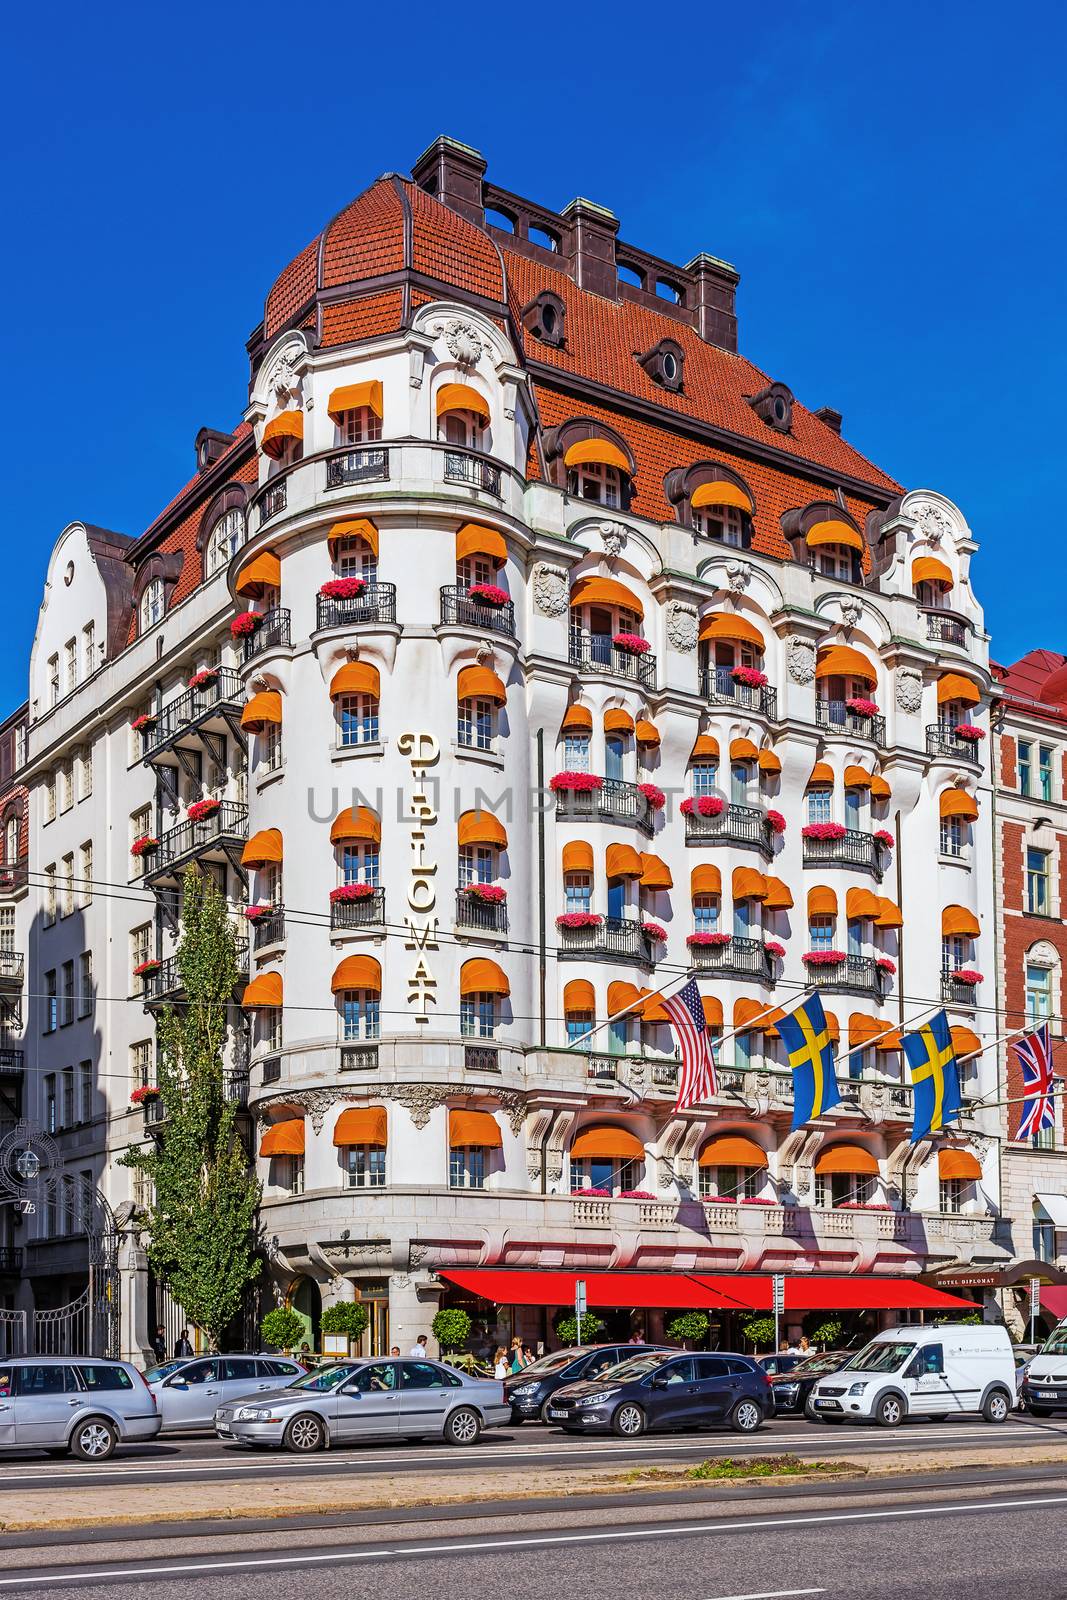 Hotel Diplomat on Strandvagen by pawel_szczepanski